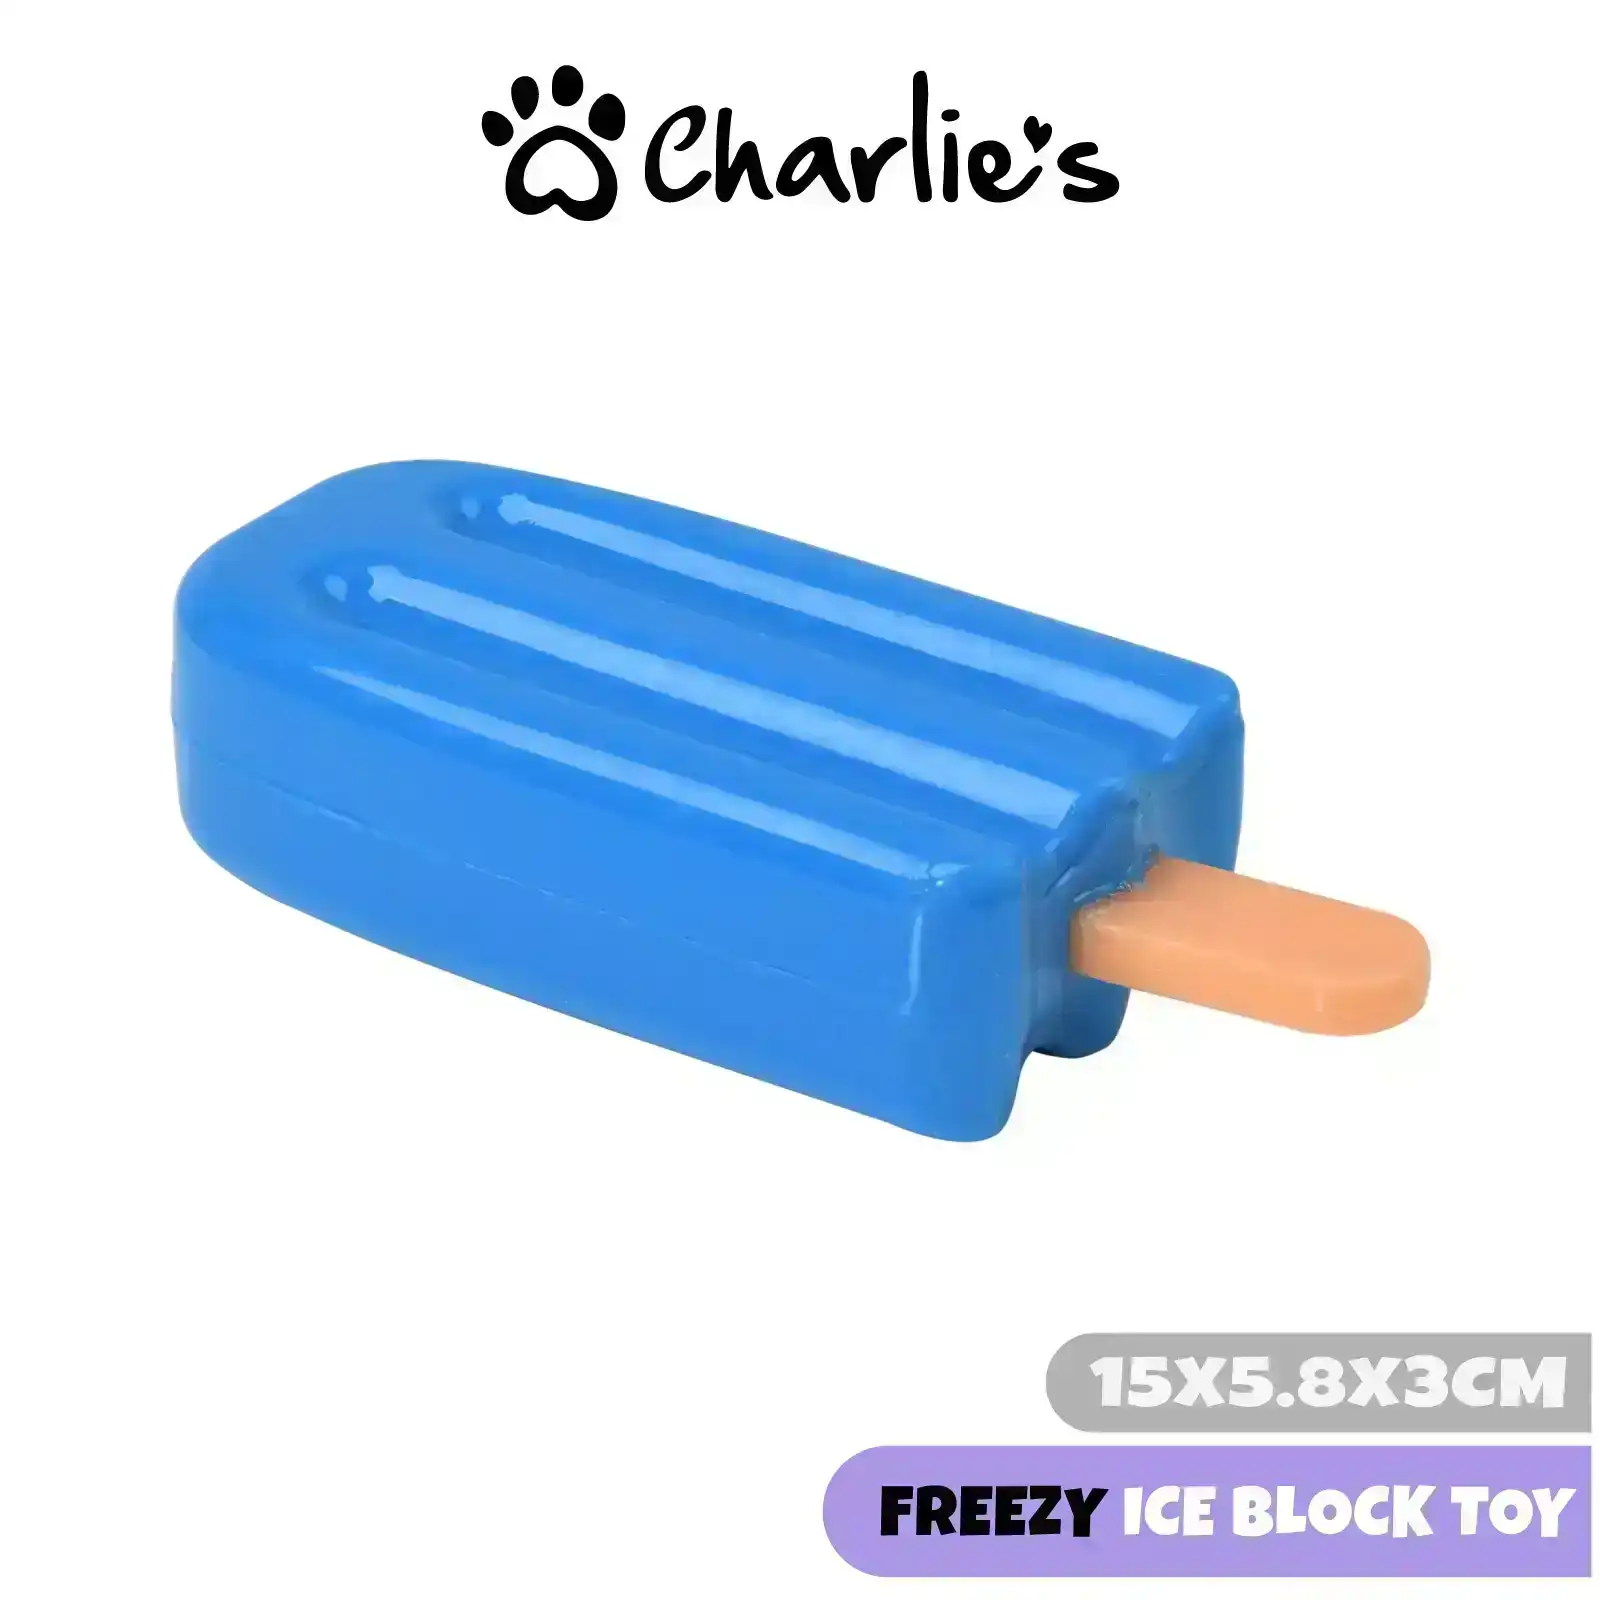 Charlie's Freezy Ice Block Toy Blue 15x6.5x3.5cm